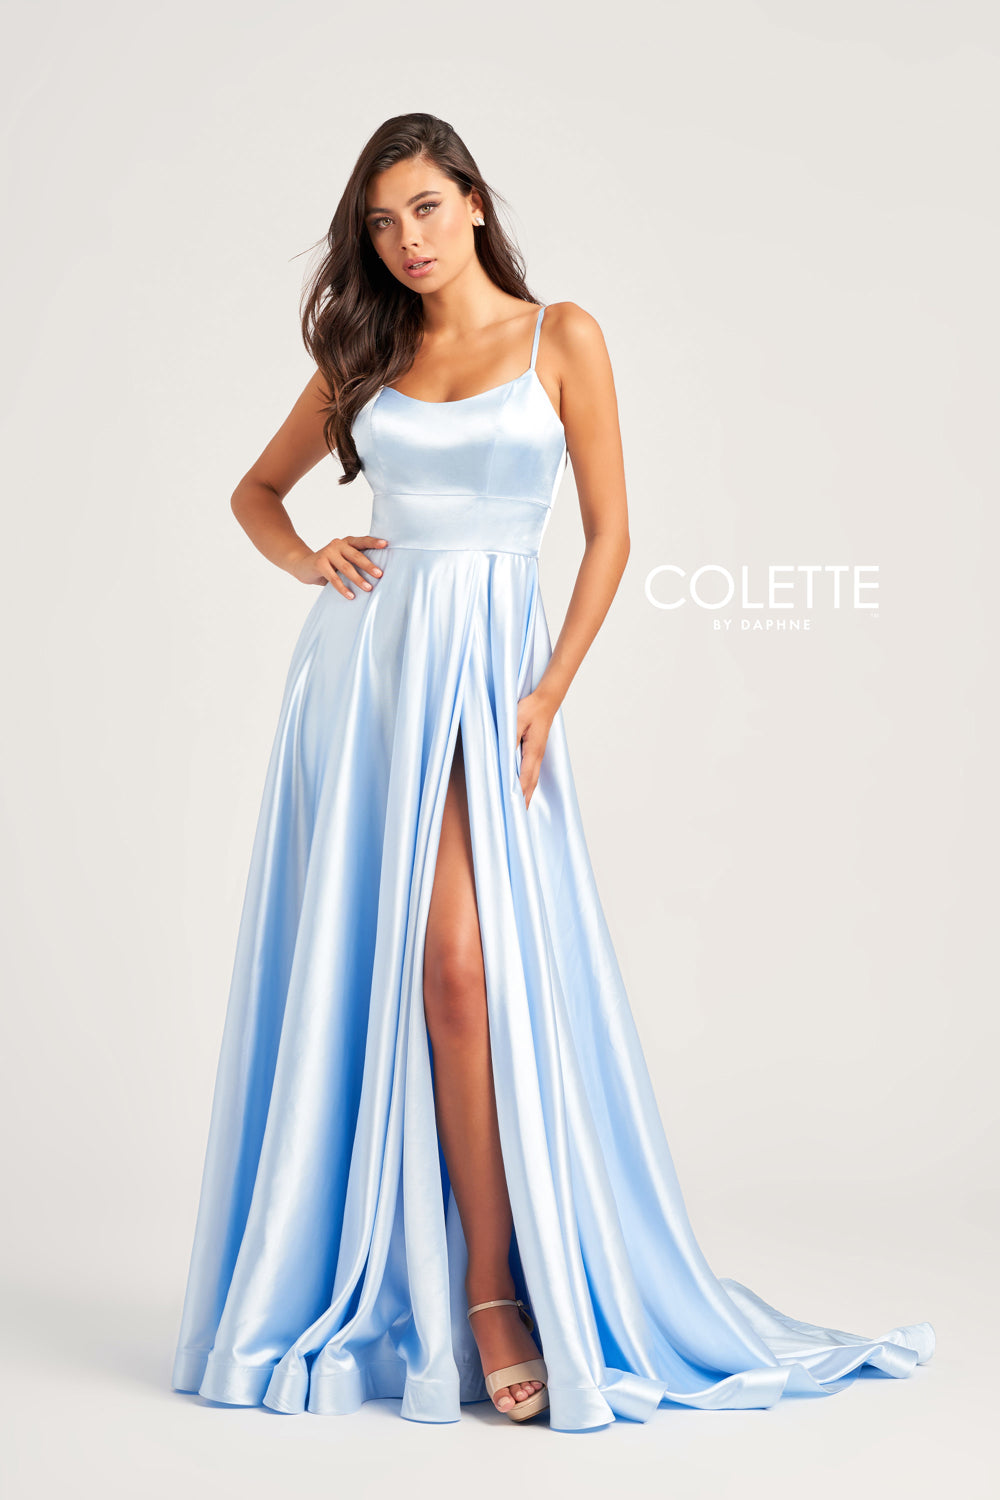 Colette CL5283